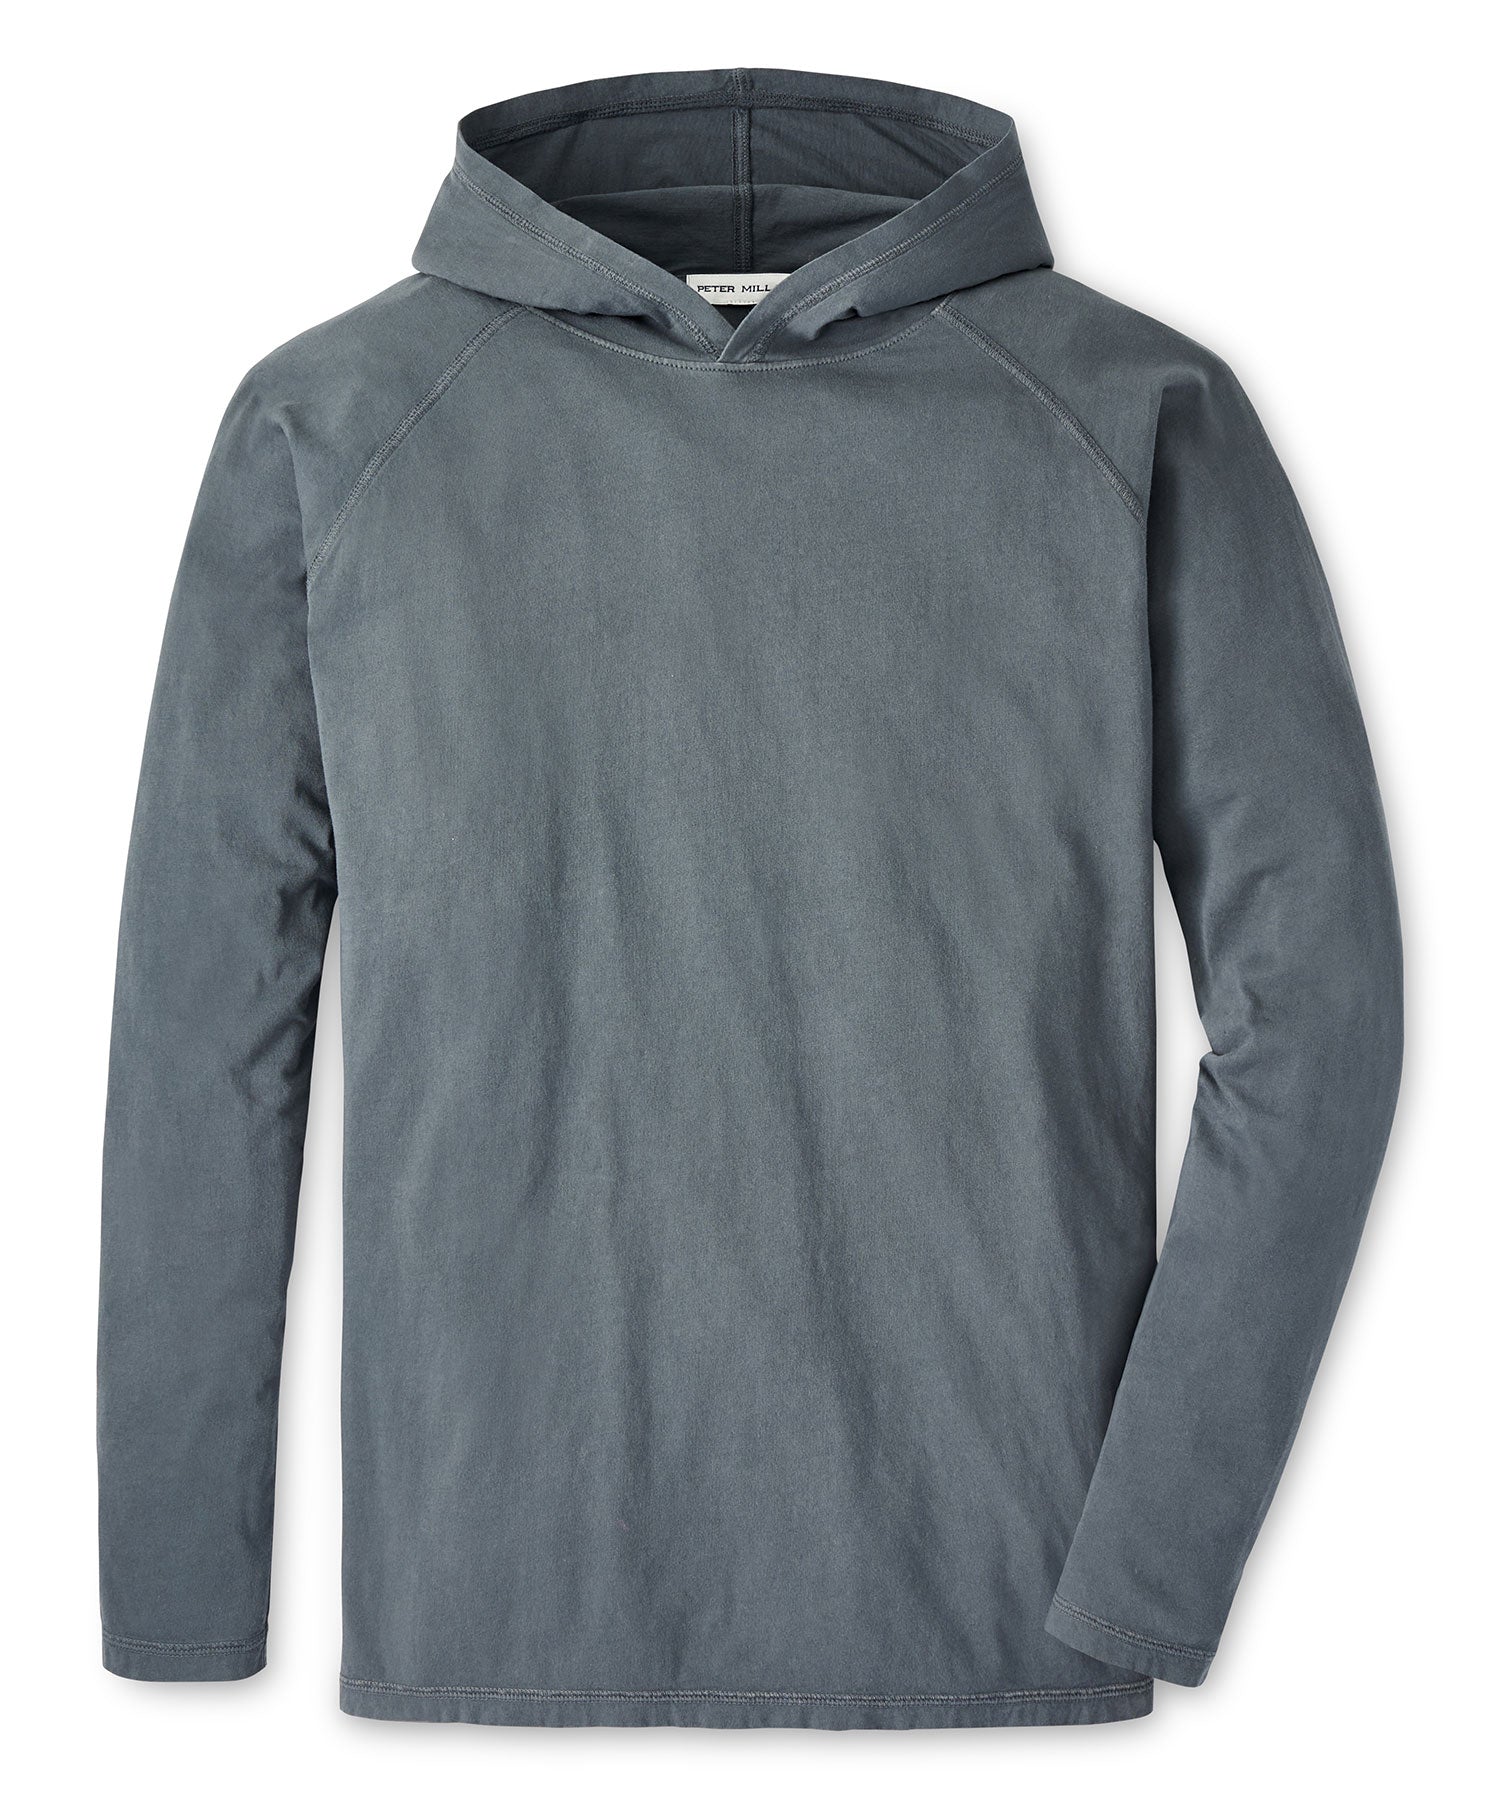 Smartwool Merino Sport 150 Hoodie - Merino hoodie Men's, Buy online